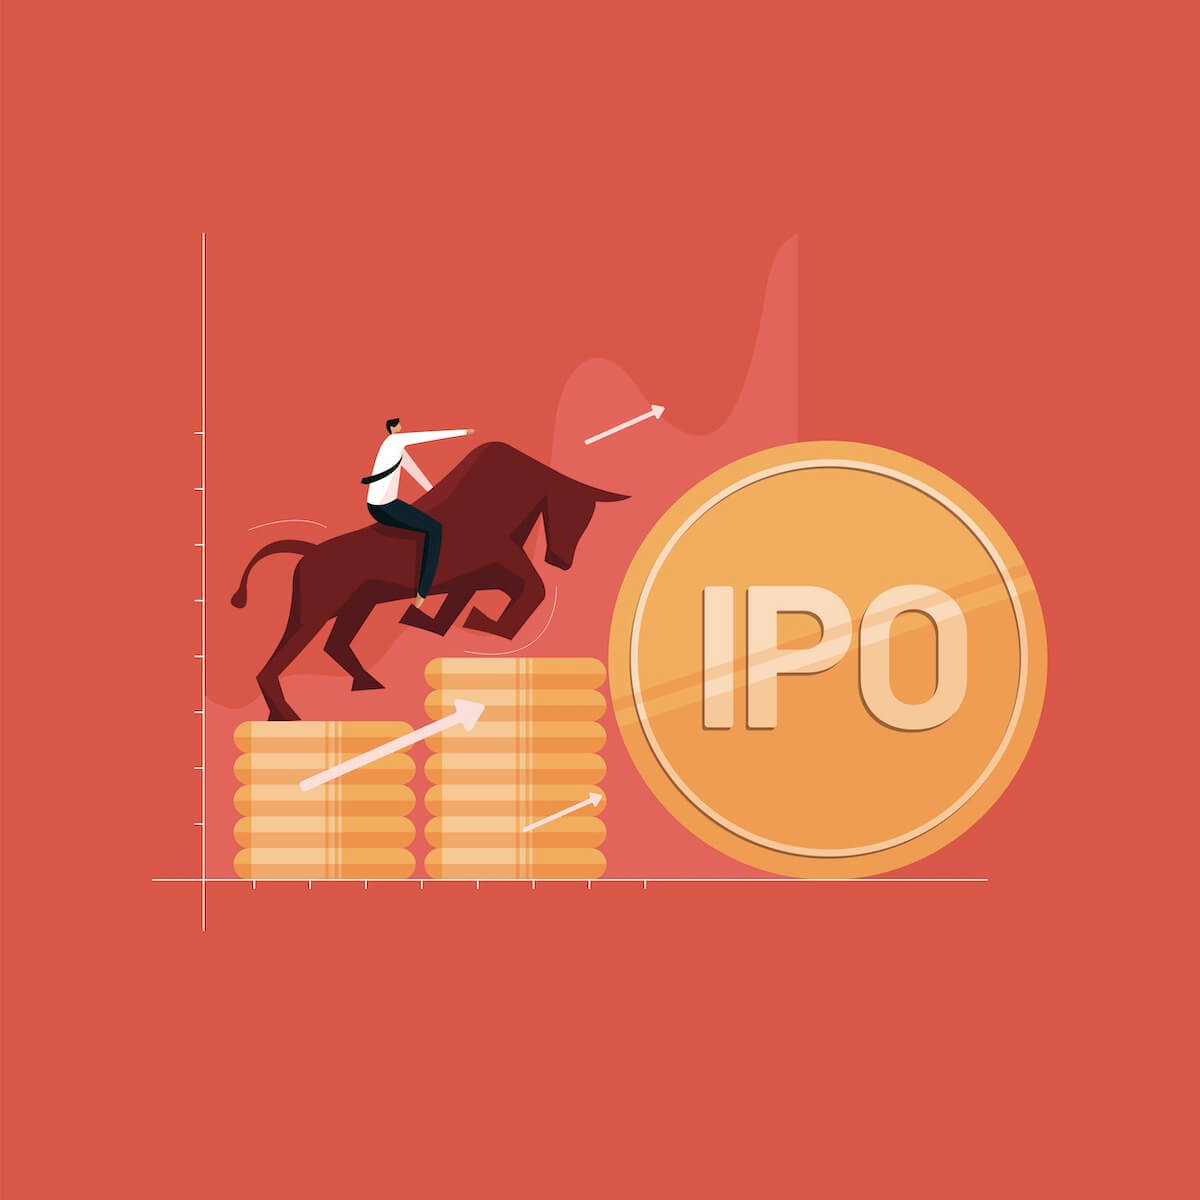 IPO株の上昇